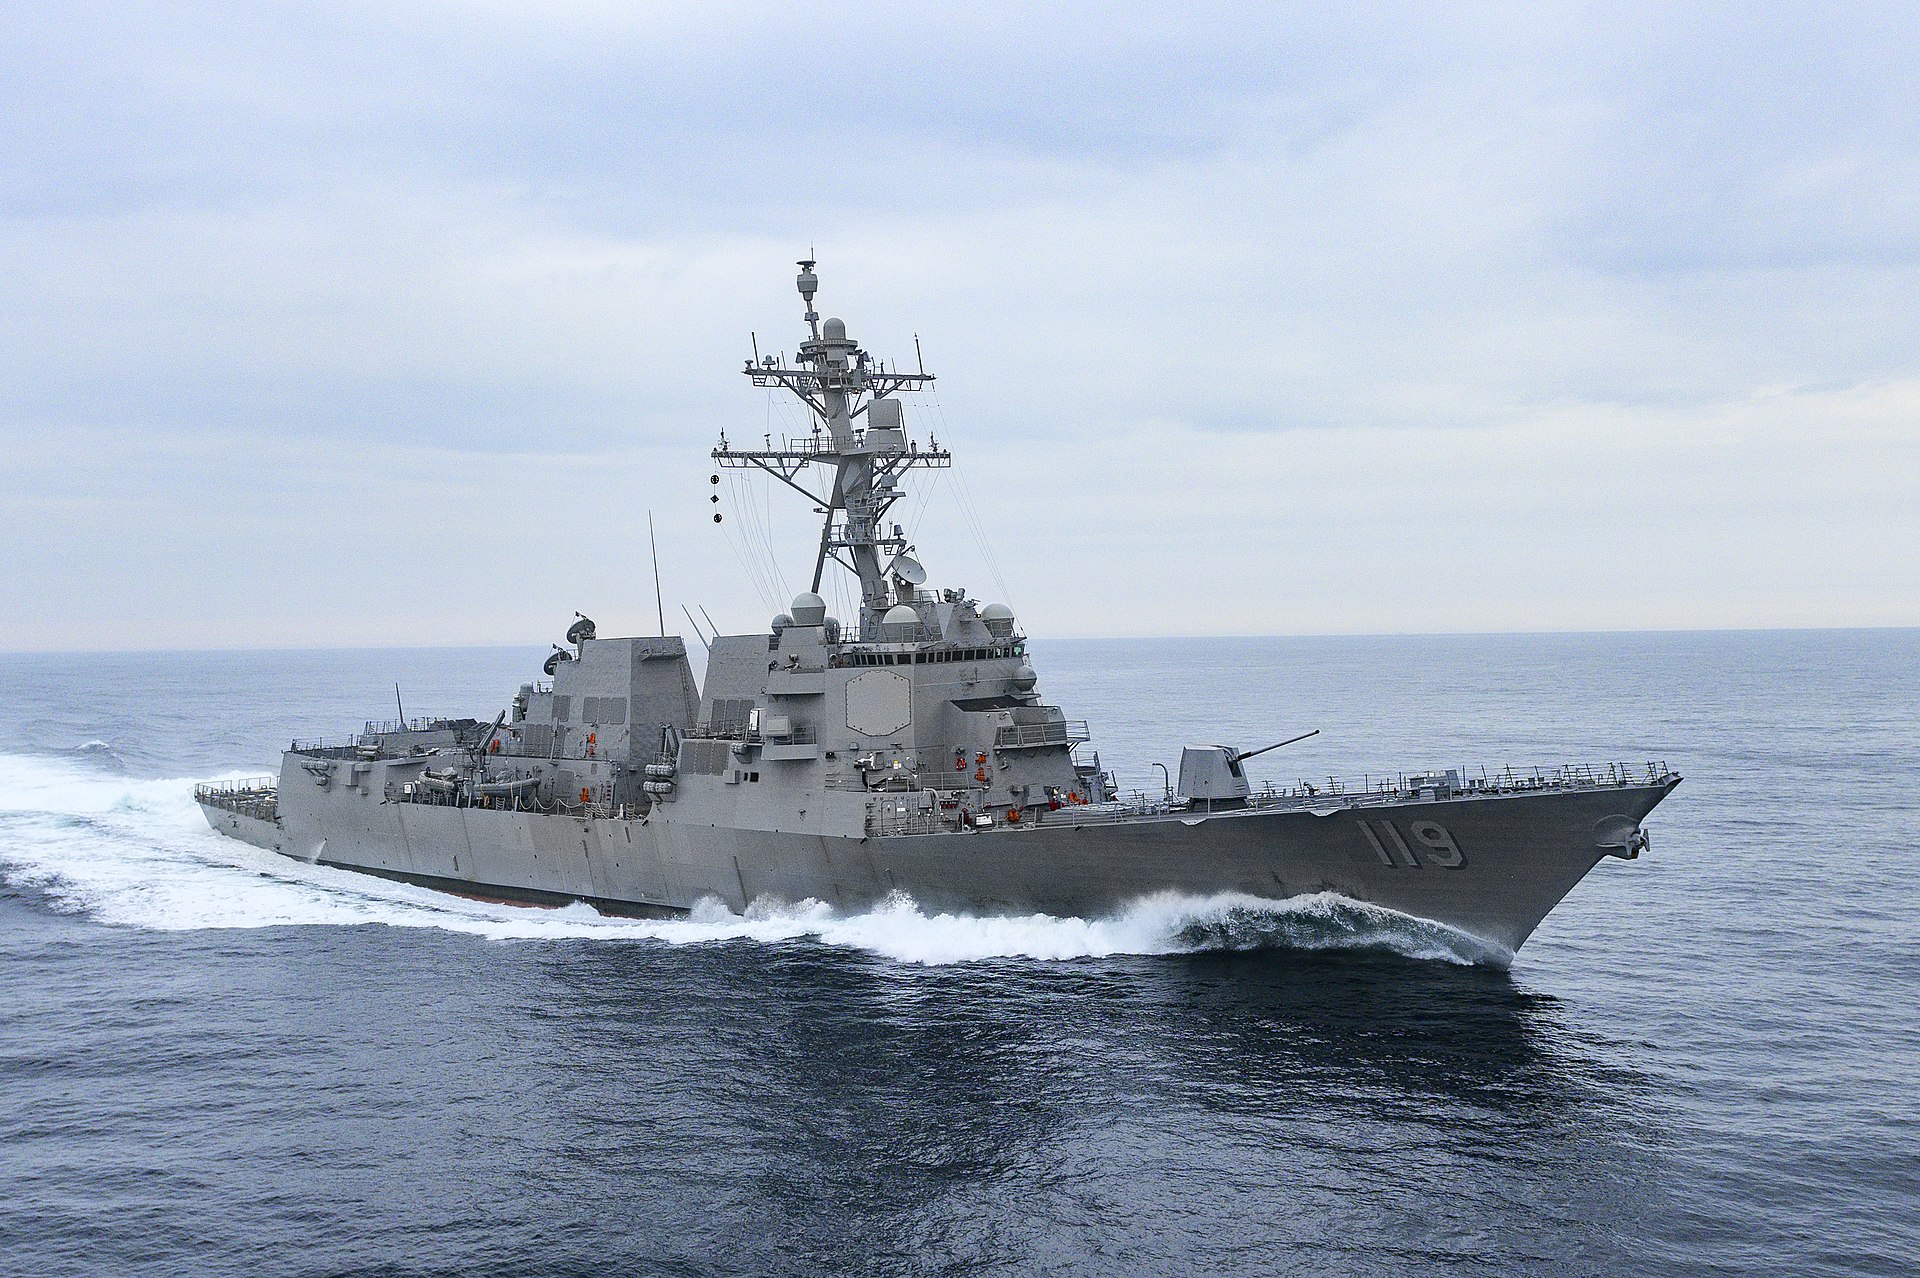 The USS Delbert D. Black undergoing sea trials.